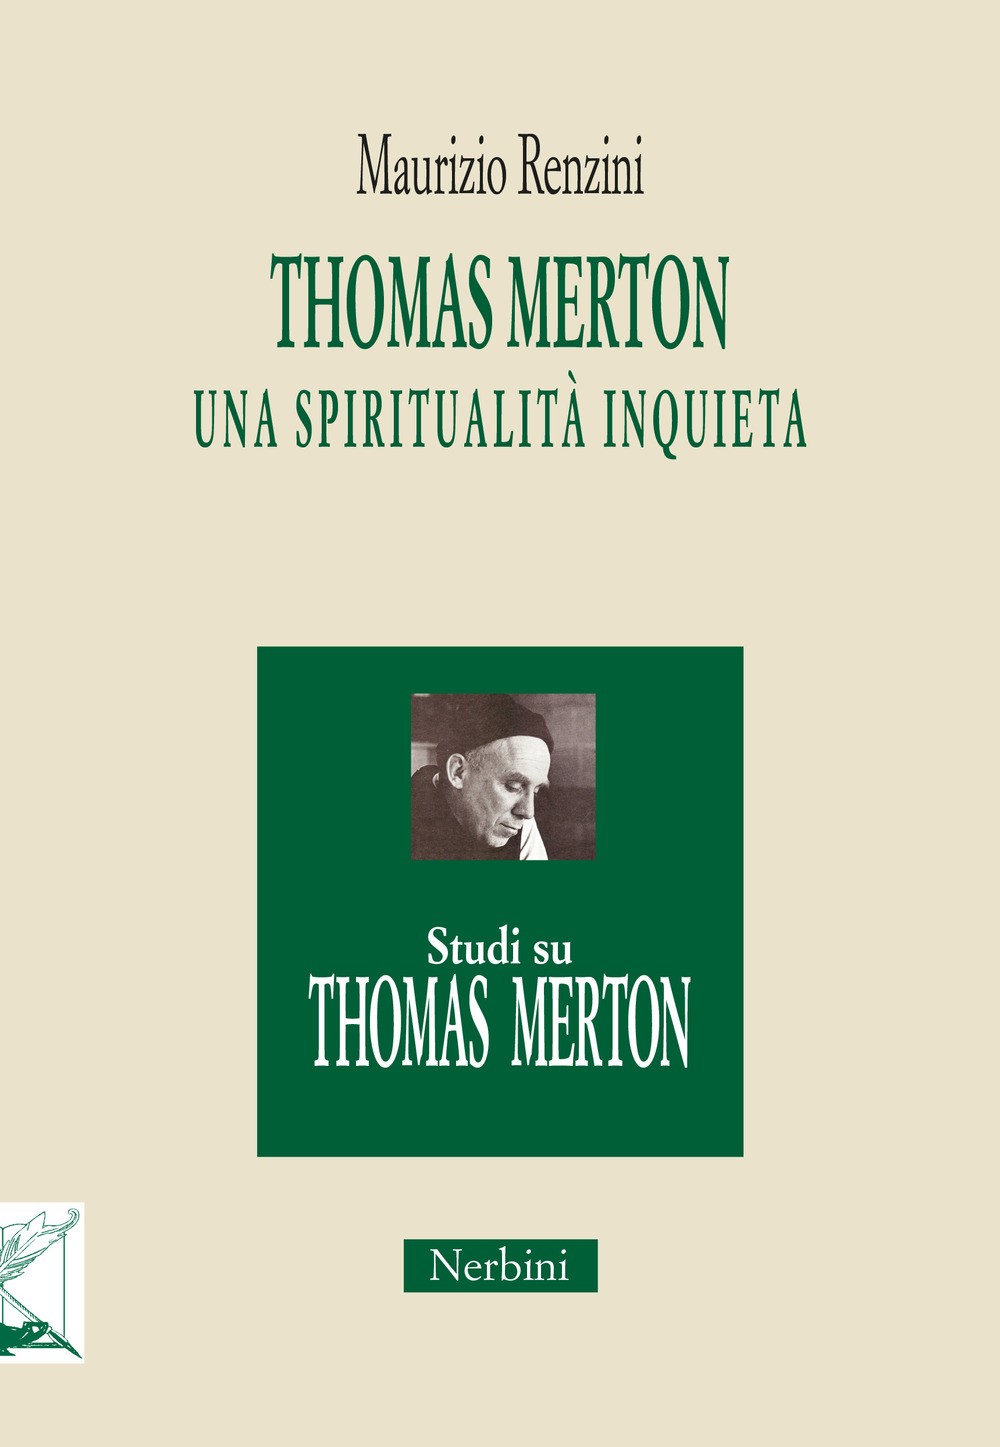 Libri Maurizio Renzini - Thomas Merton: Una Spiritualita Inquieta NUOVO SIGILLATO, EDIZIONE DEL 27/11/2017 SUBITO DISPONIBILE